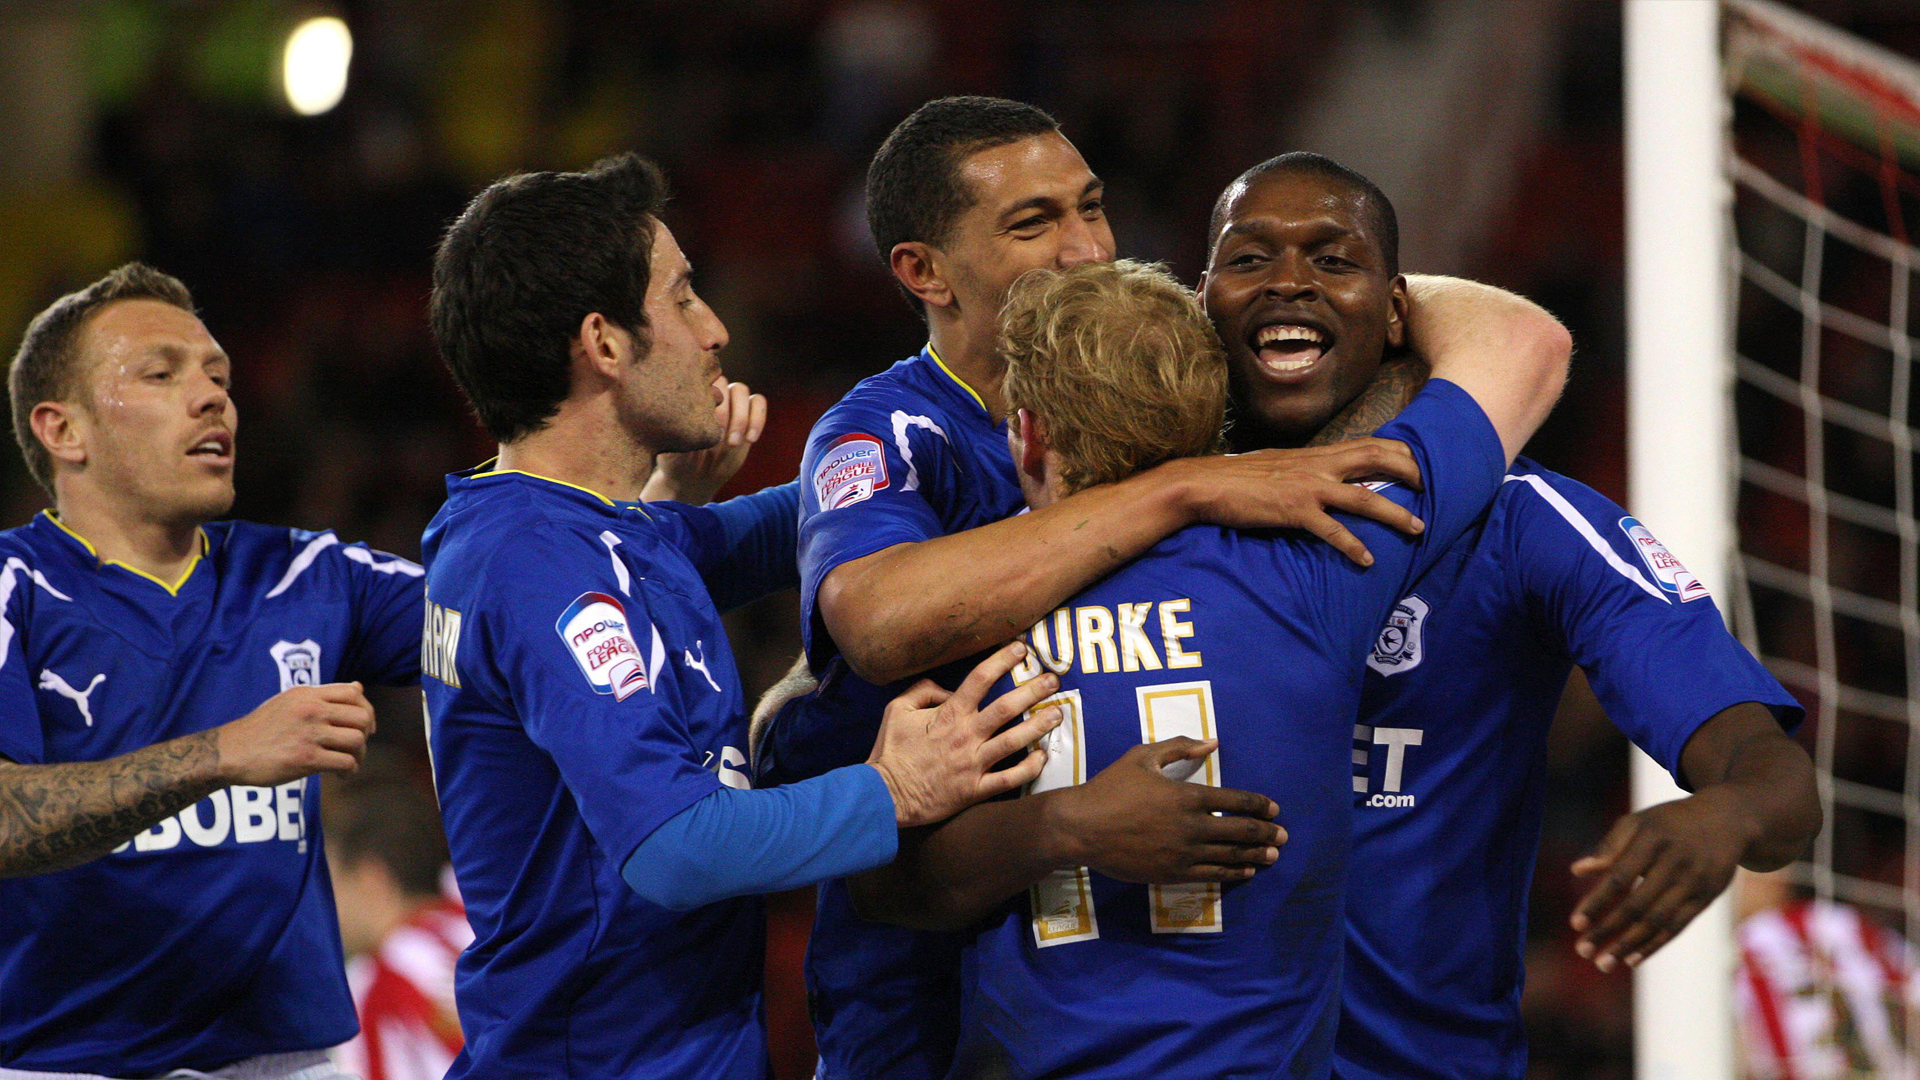 City players celebrate vs. Sheffield United - 2011